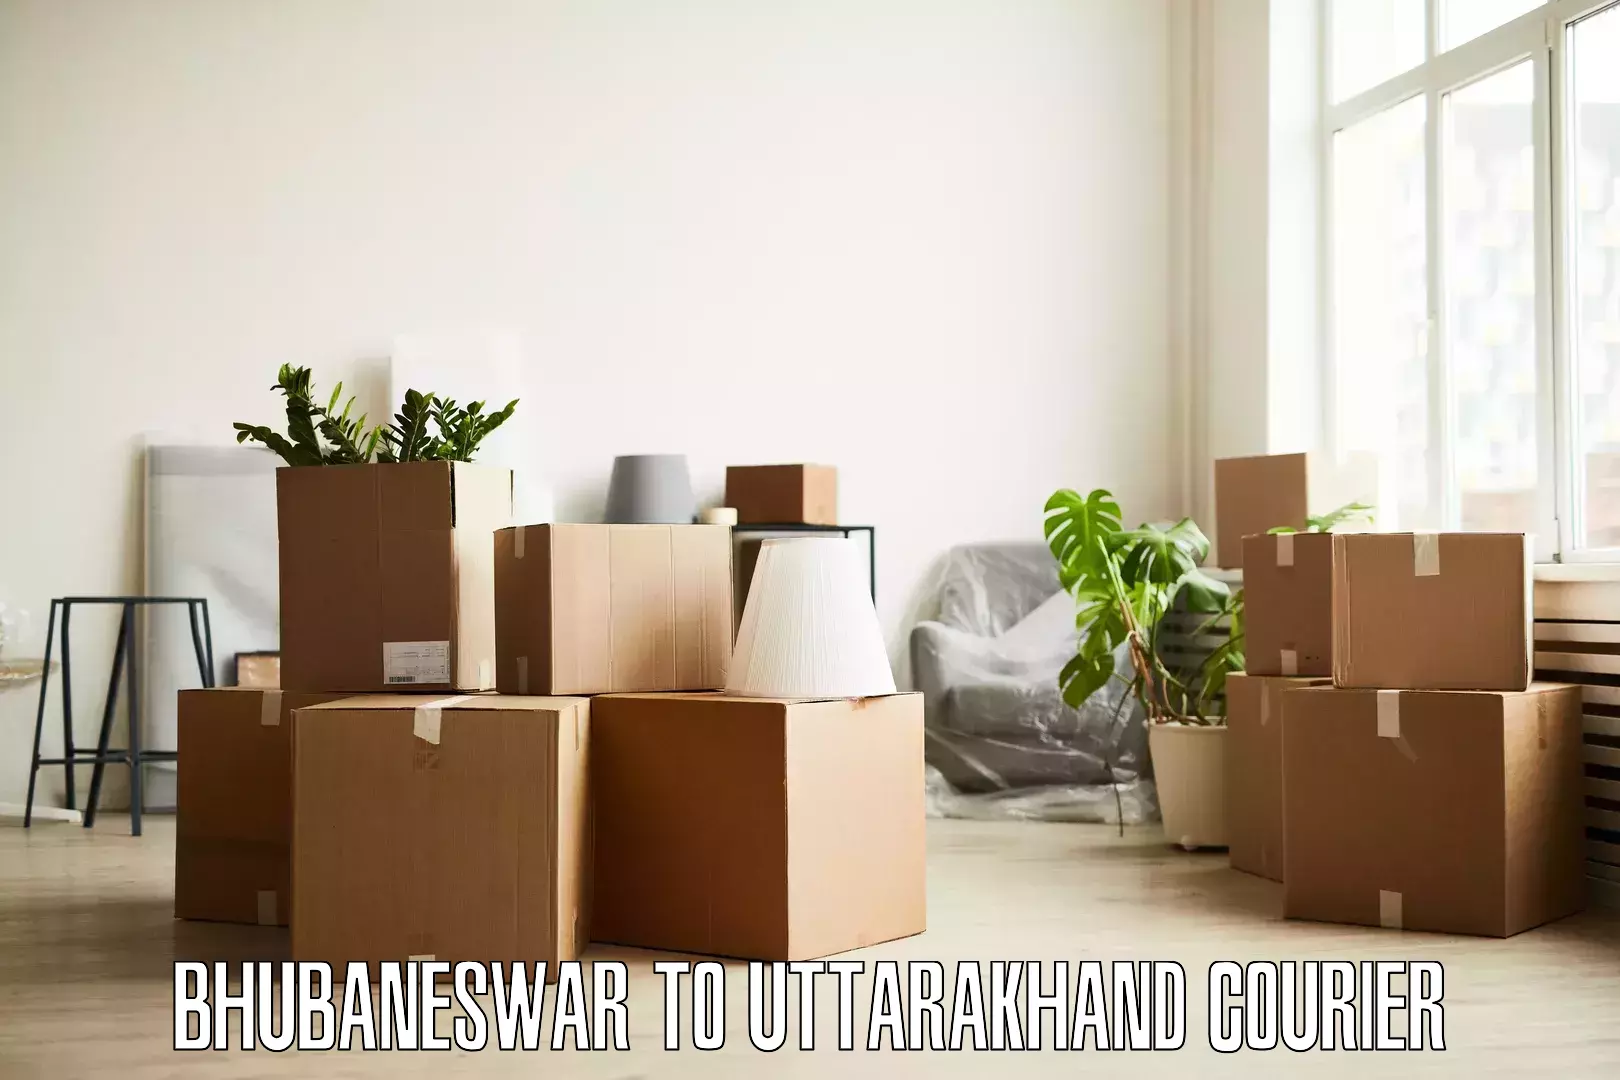 Furniture moving experts Bhubaneswar to Uttarakhand